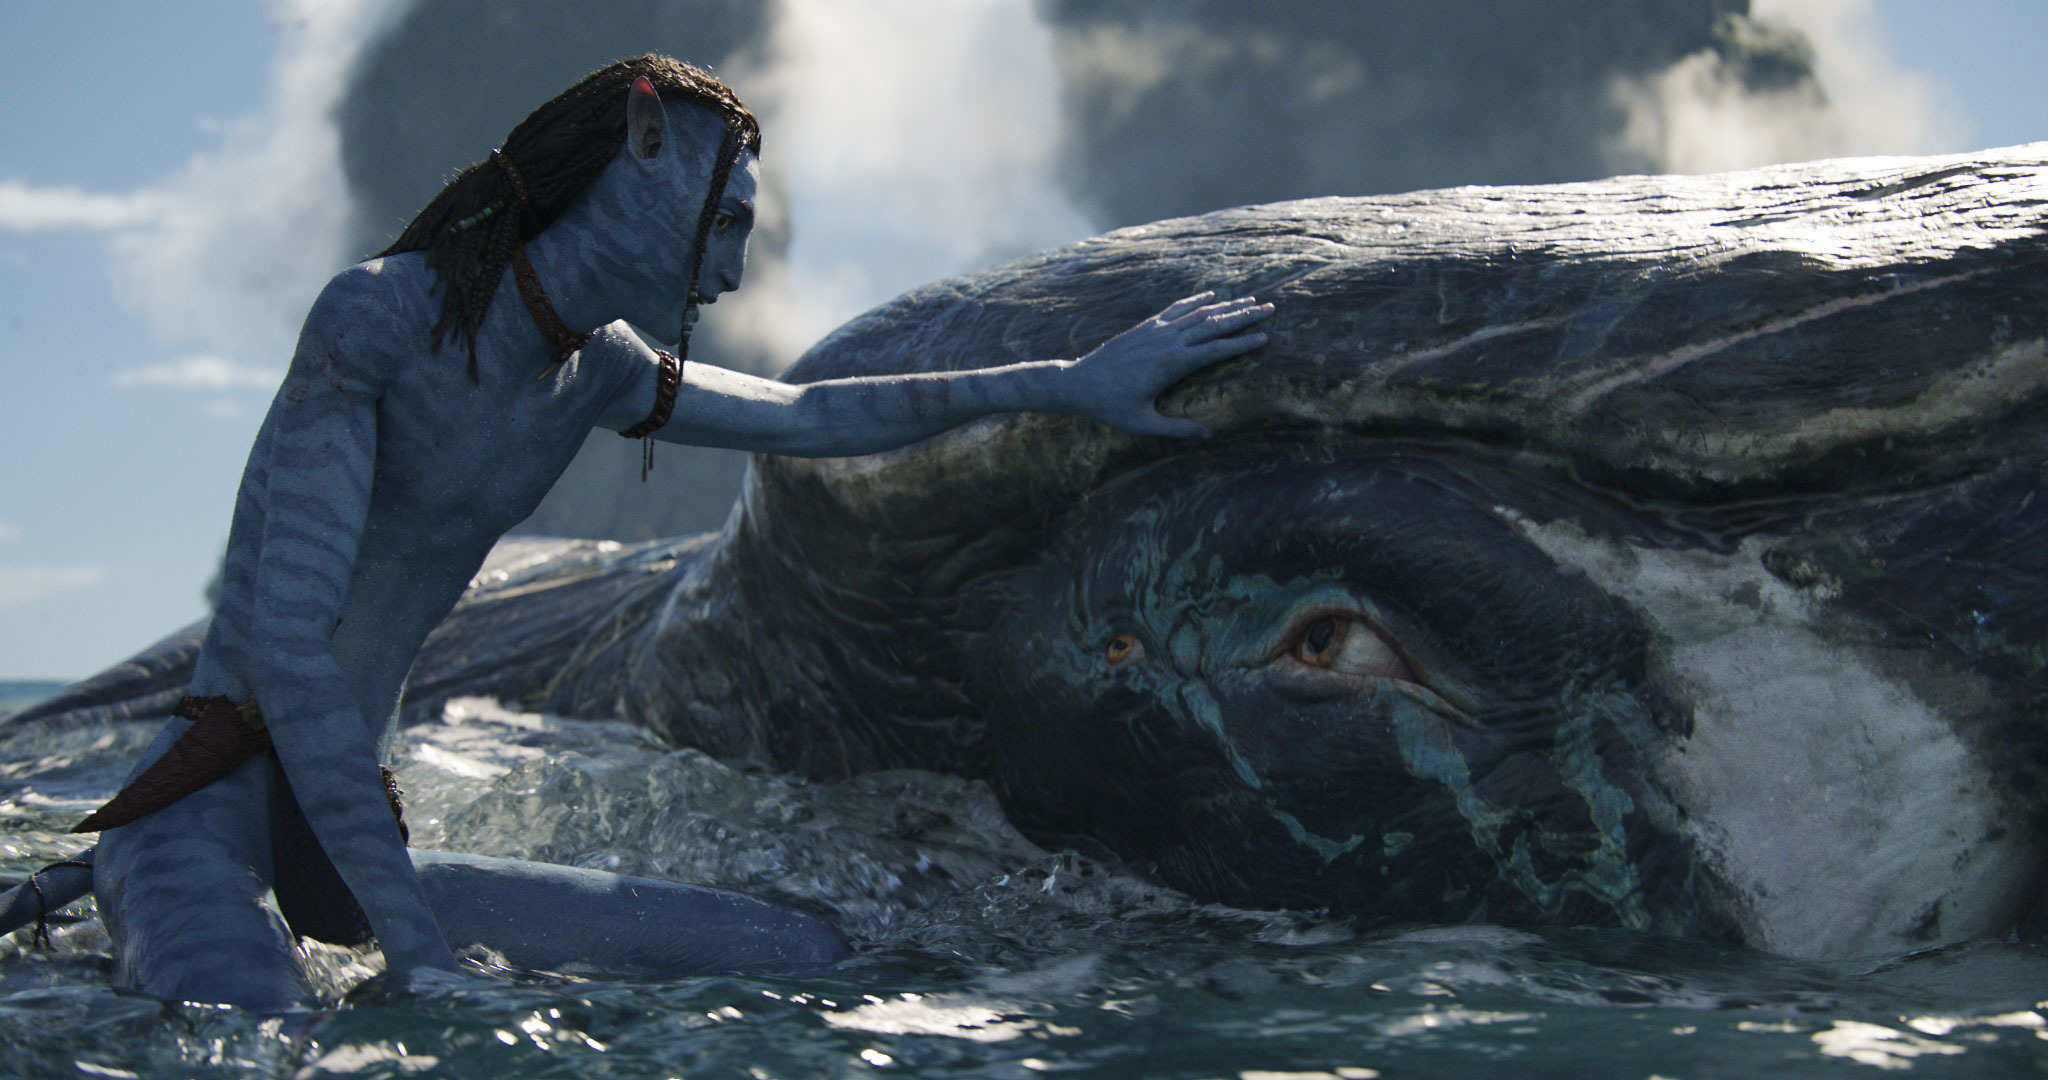 New Plot, Cast Details Revealed About ‘Avatar’ Sequels